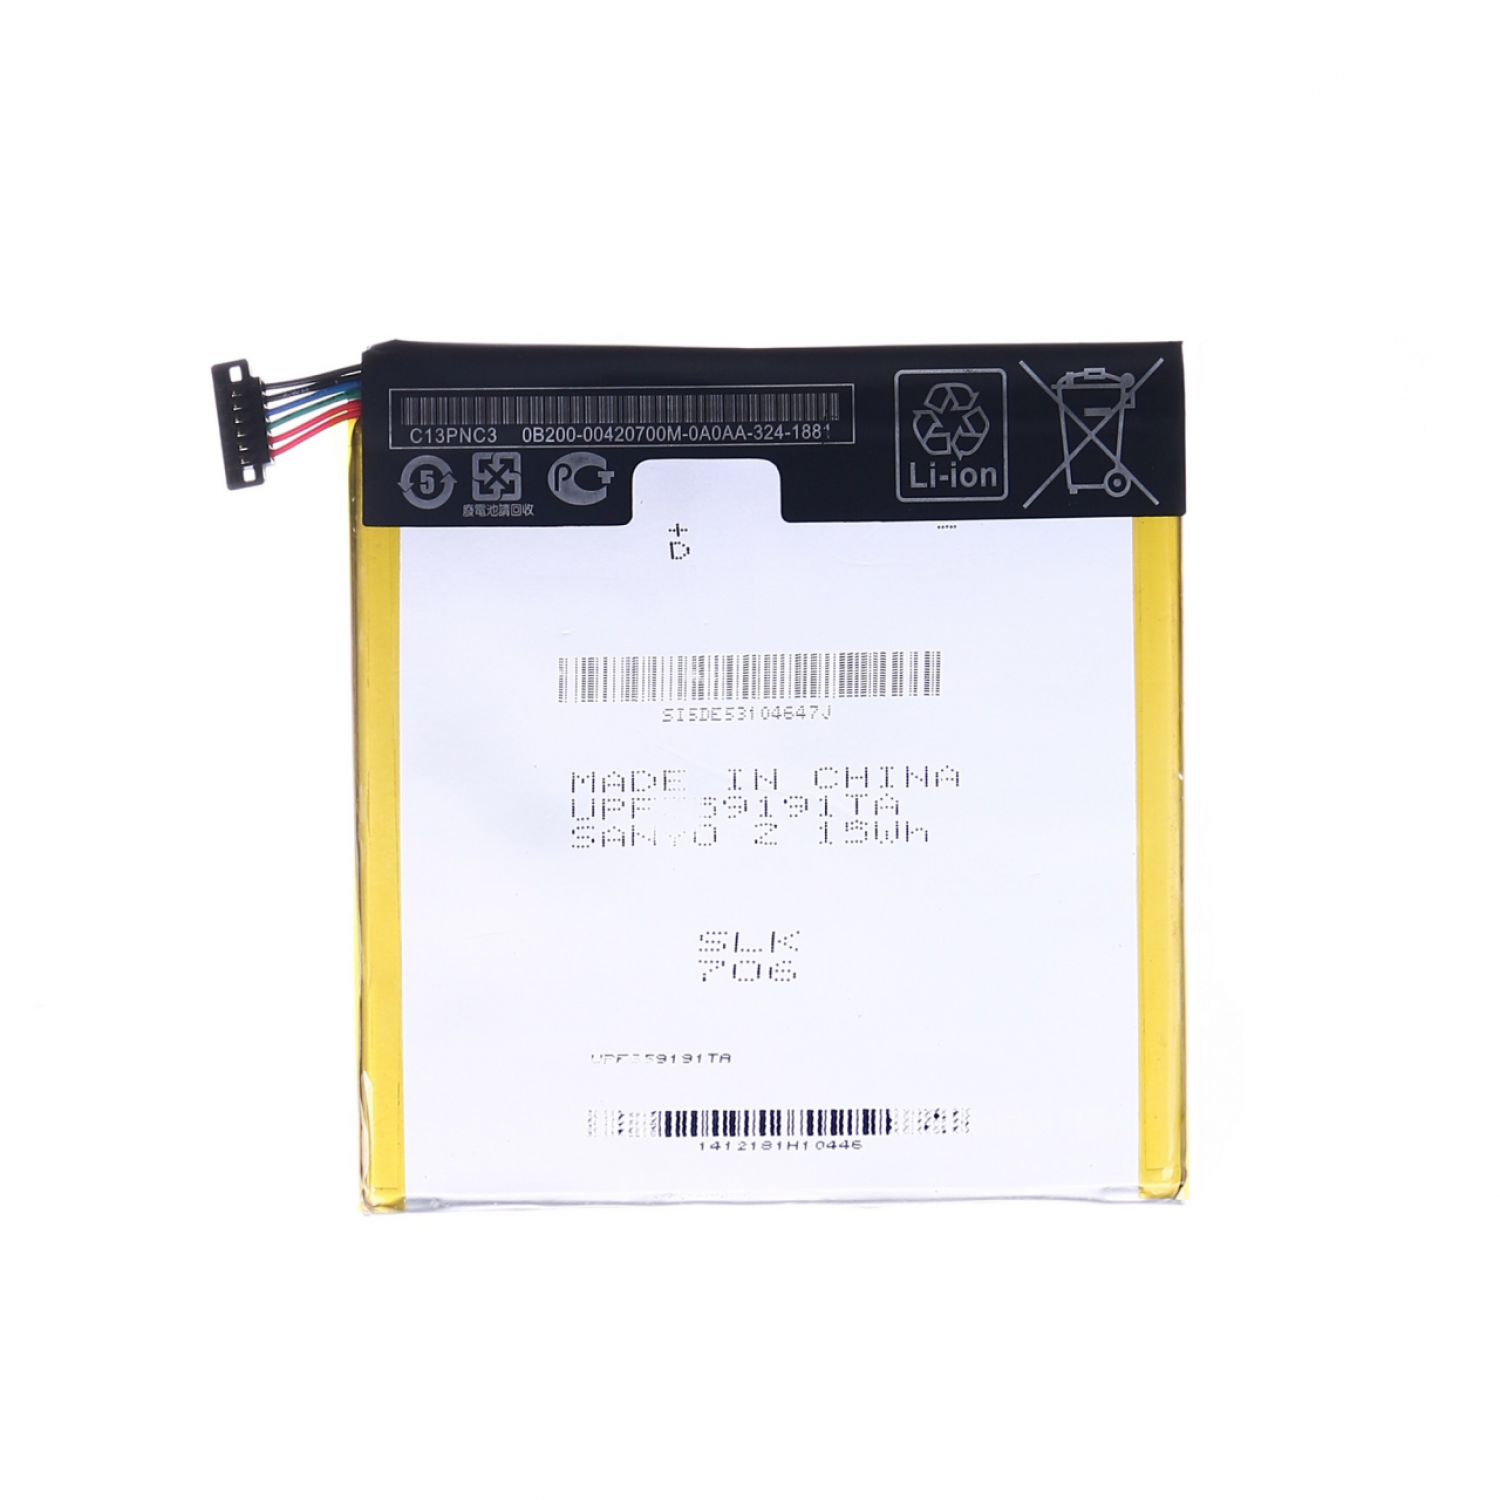 Asus Nexus 7 C11P1303 2013 Batarya Pil